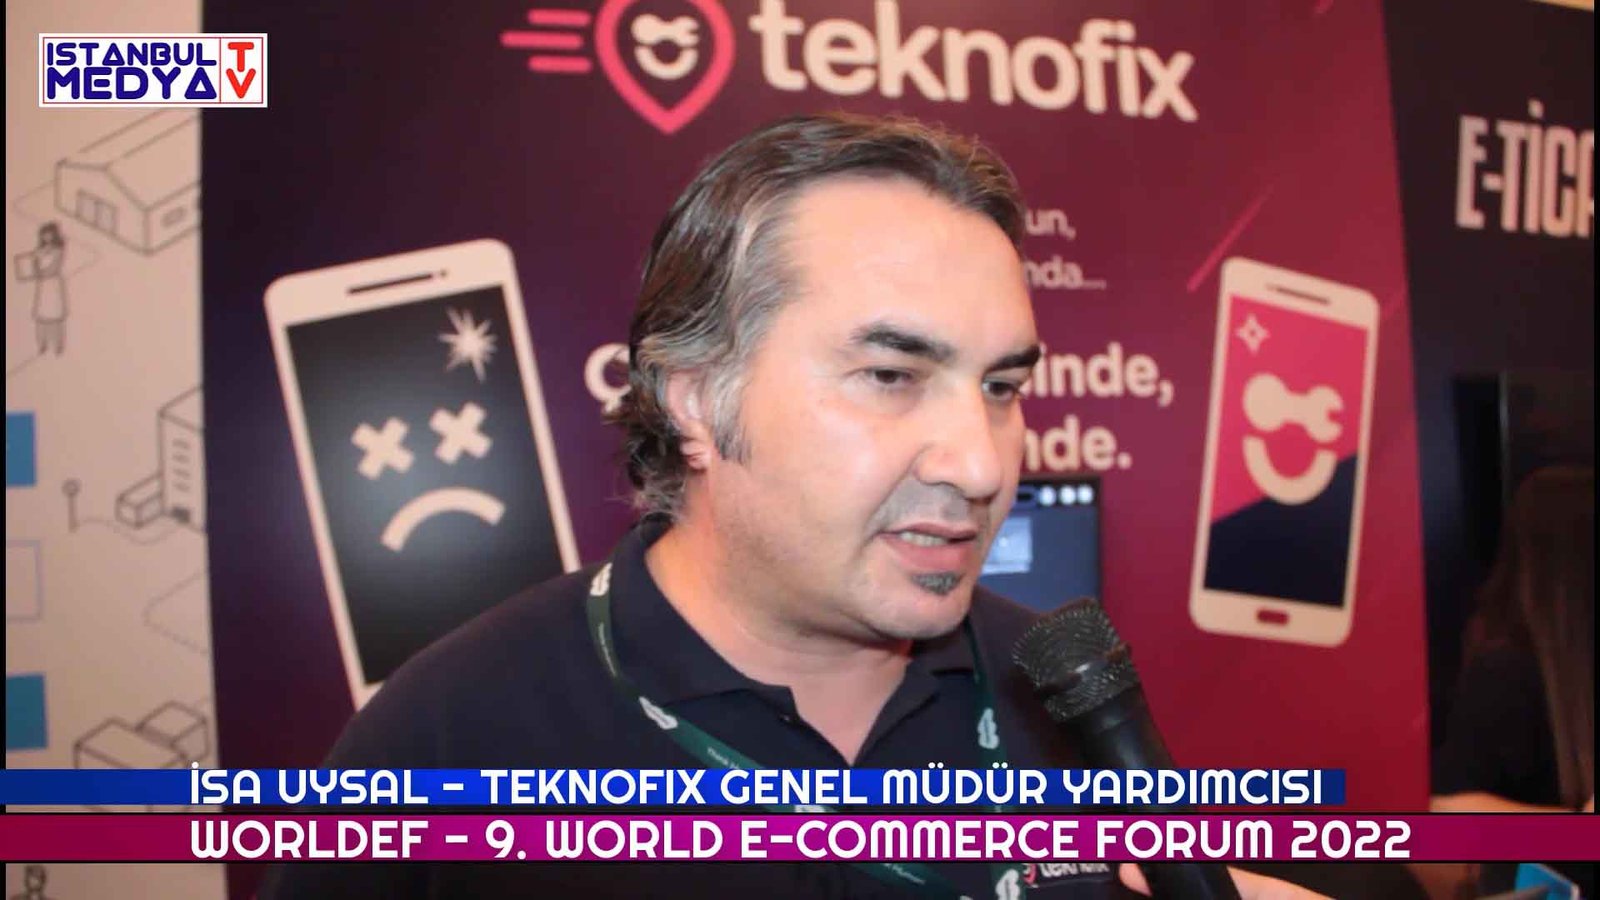 İsa Uysal Teknofix Genel Müdür Yardımcısı – Worldef 9. World E-Commerce Forum 2022